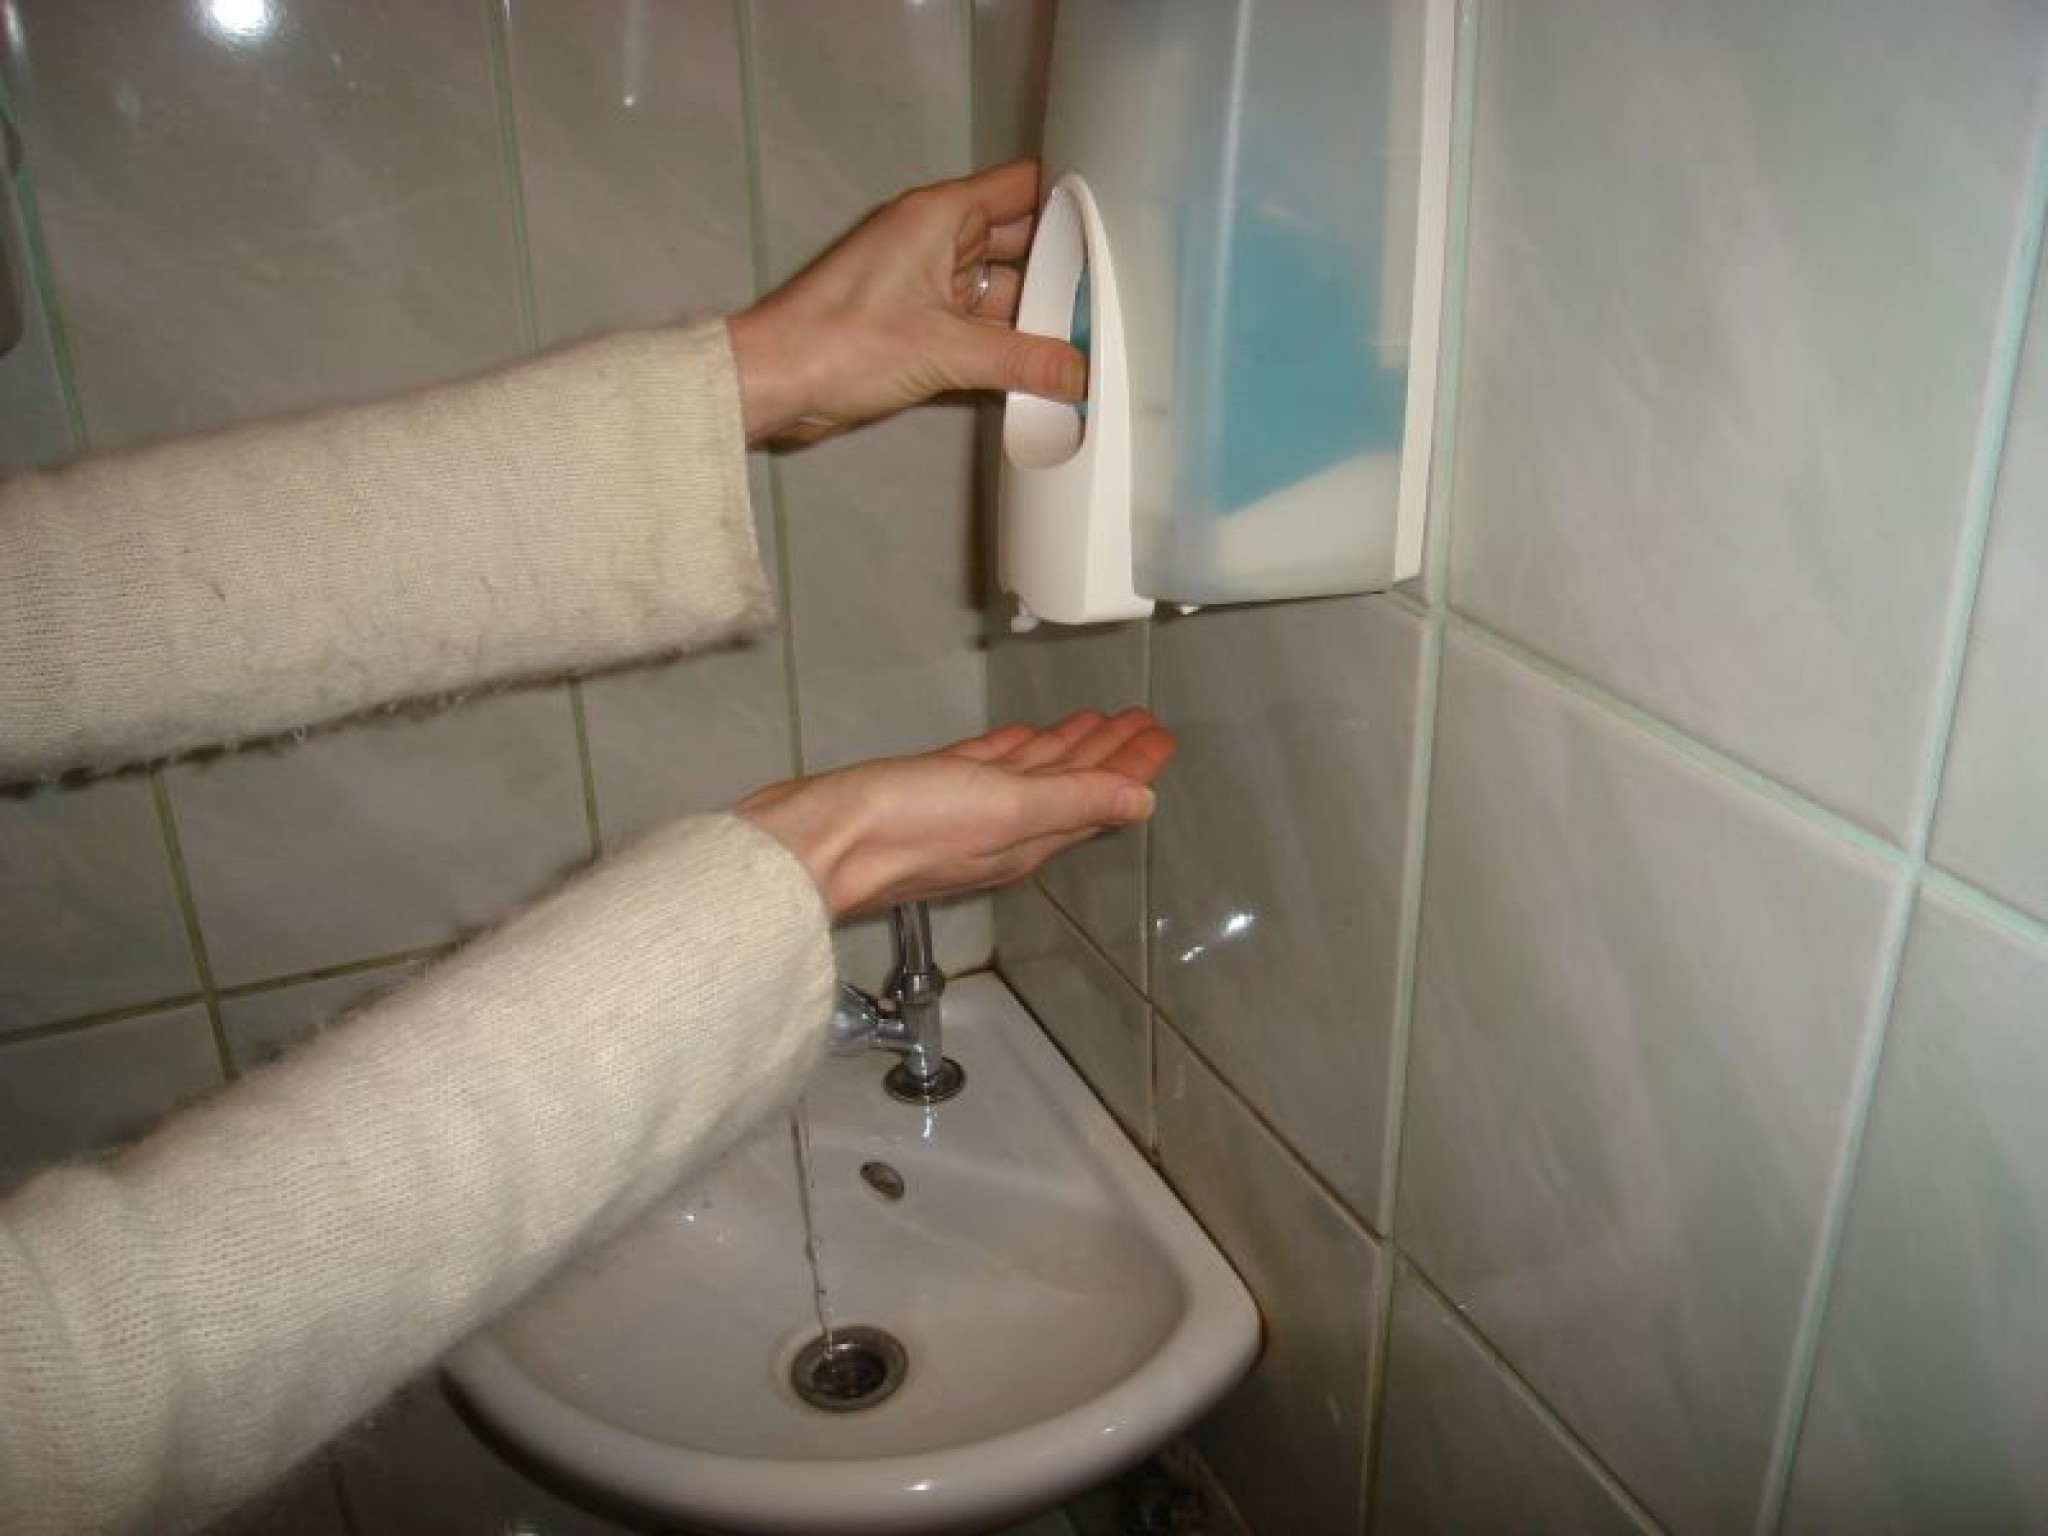 Smiltenē hepatīta un vēdervīrusu laikā skolas tualetē nav šķidro ziepju